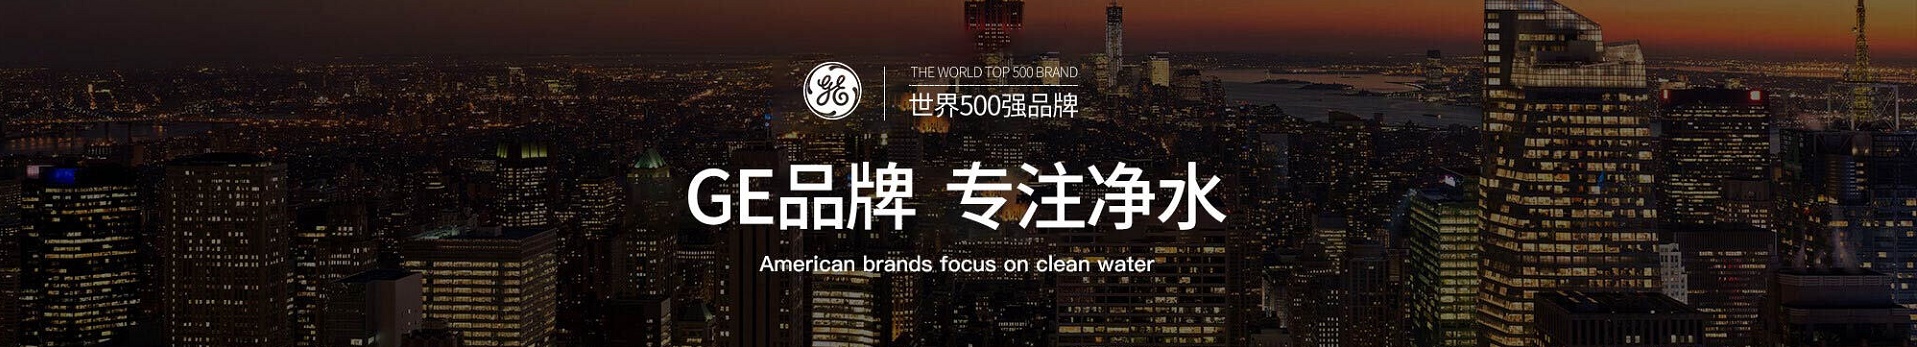 中国国产高端第一品牌英尼克净水器-英超专用